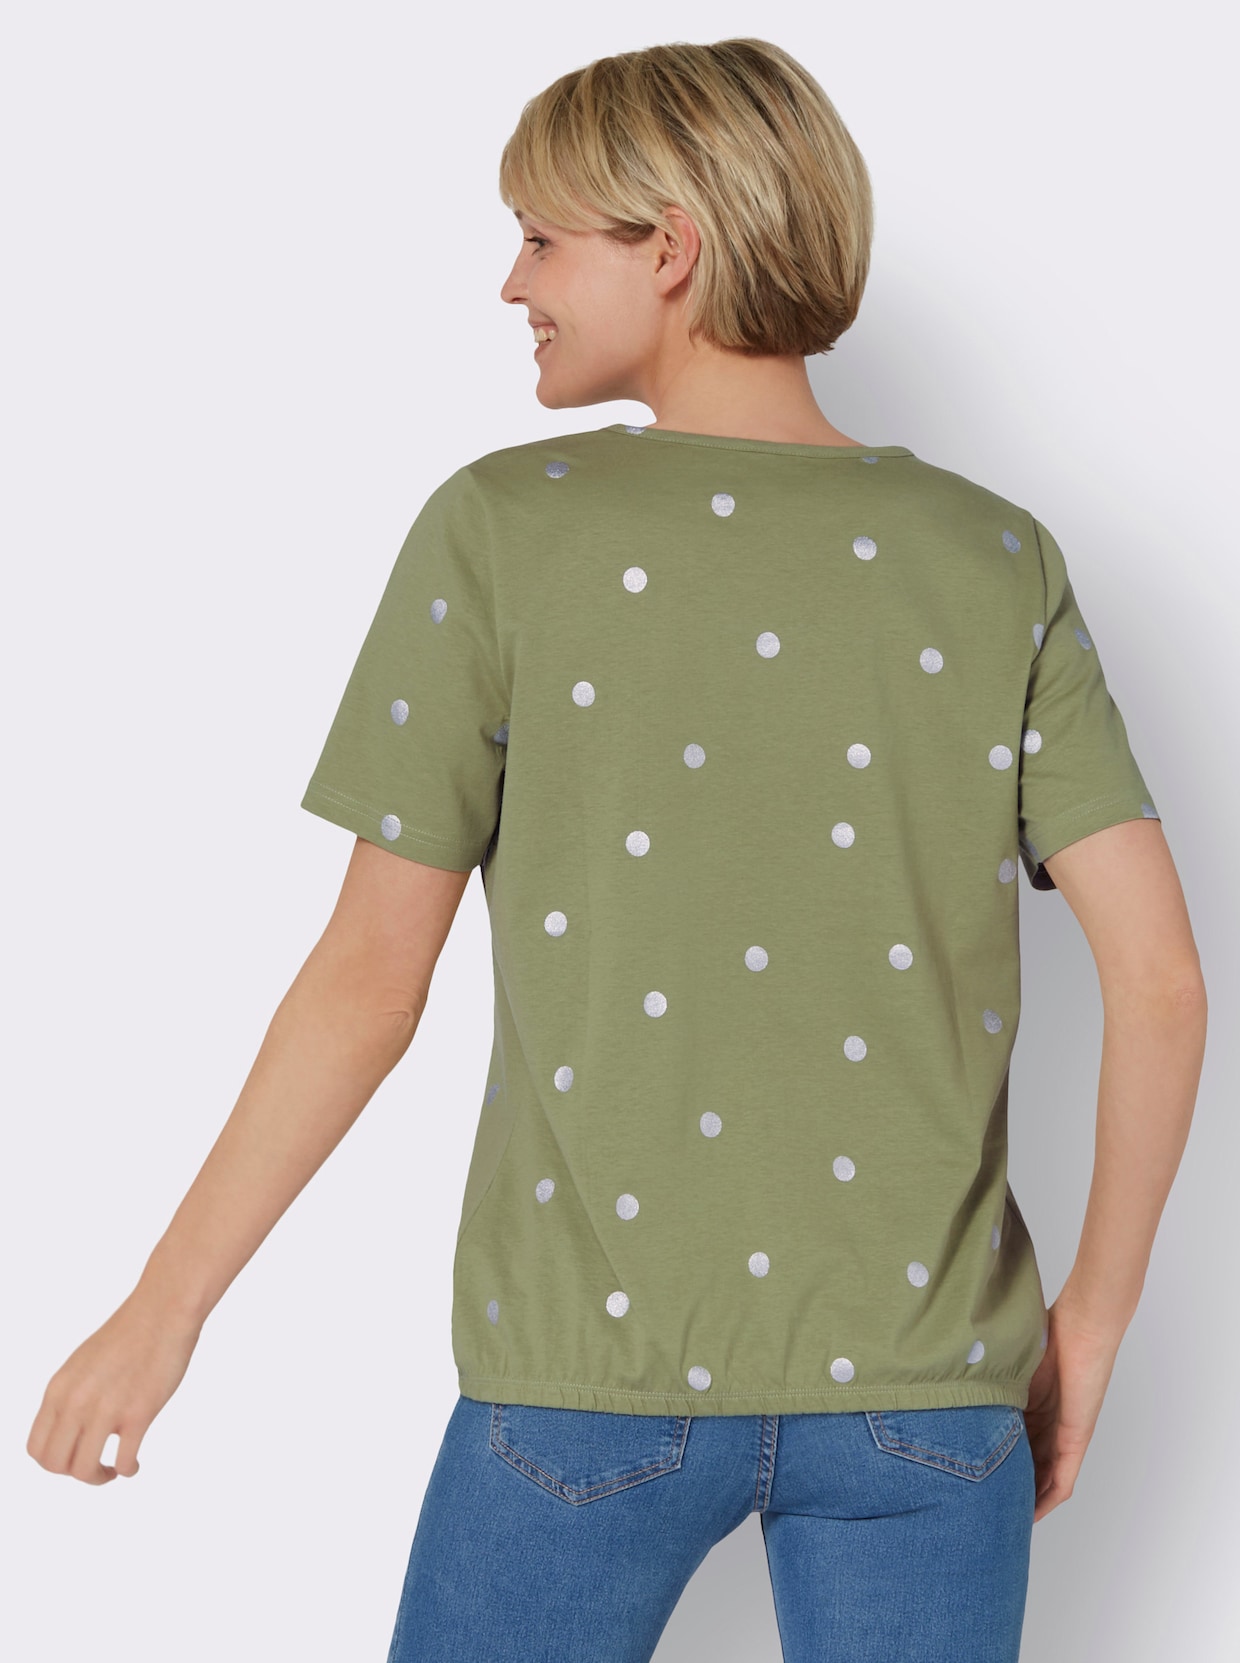 Tričko s krátkým rukávem - rákosová